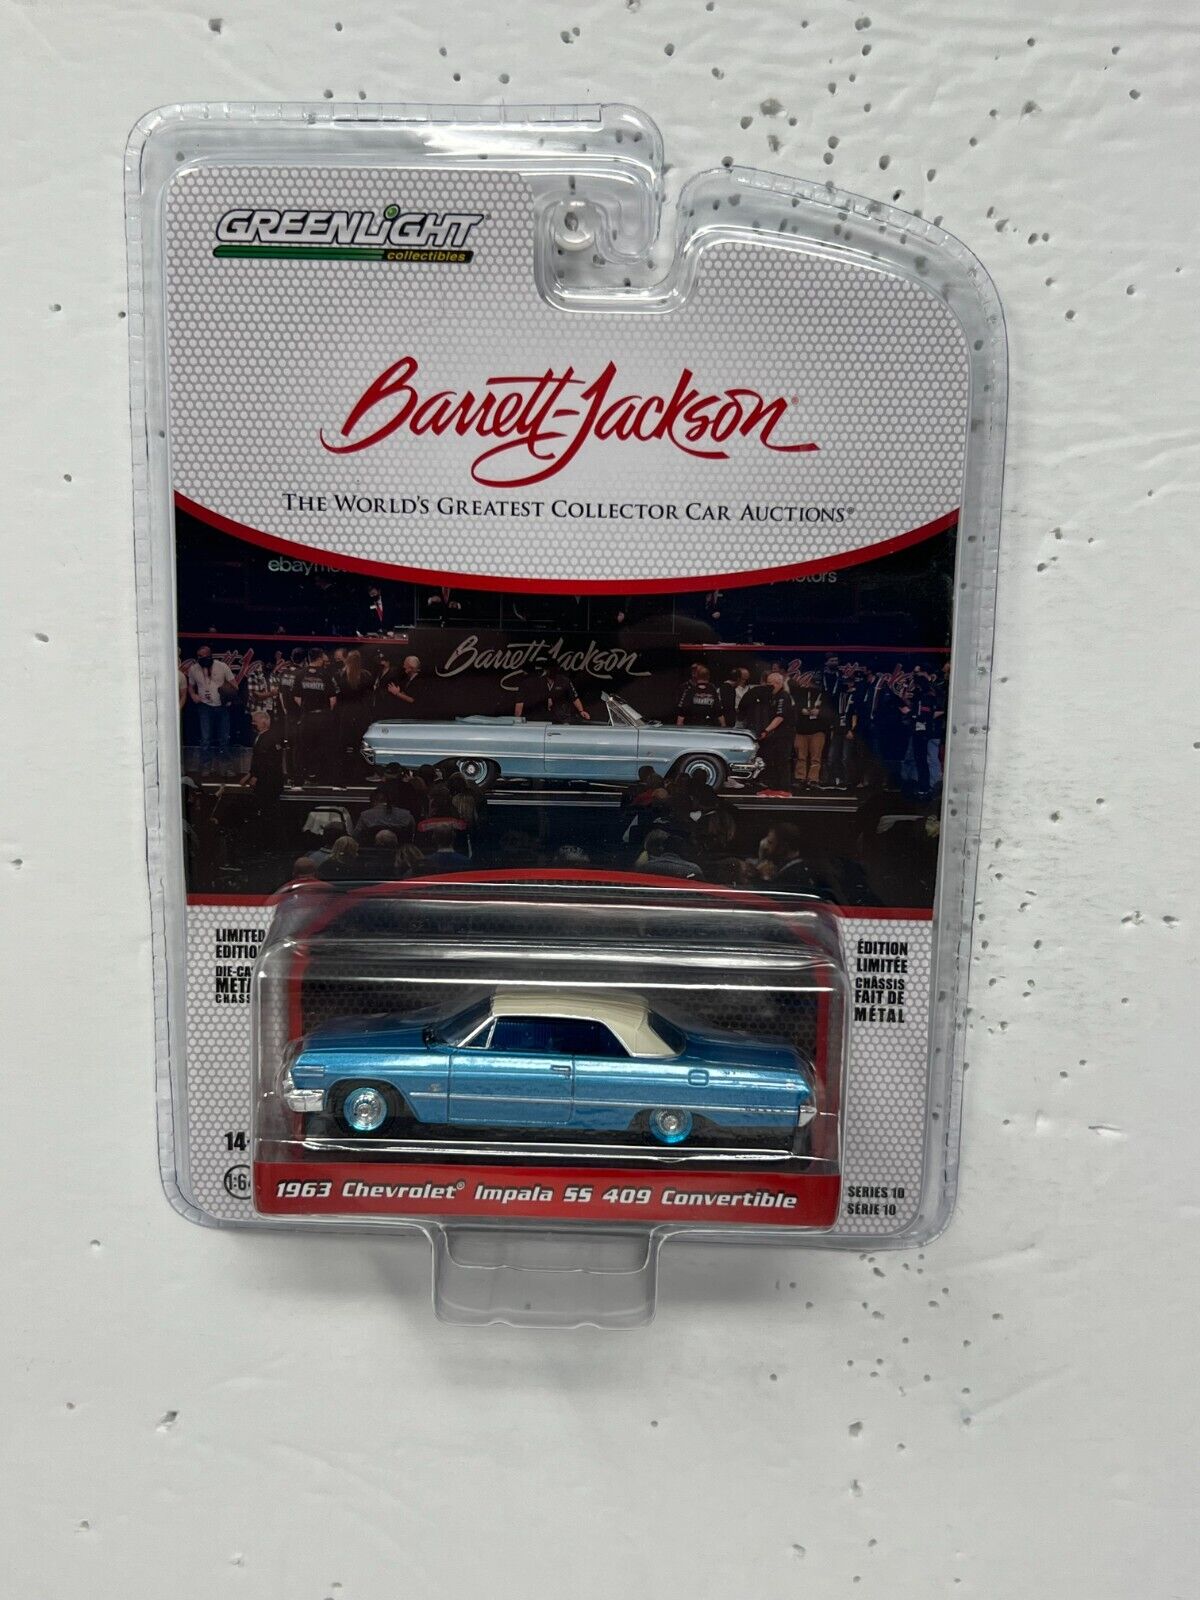 Greenlight Barrett-Jackson 1963 Chevrolet Impala SS 409 Convertible 1:64 Diecast